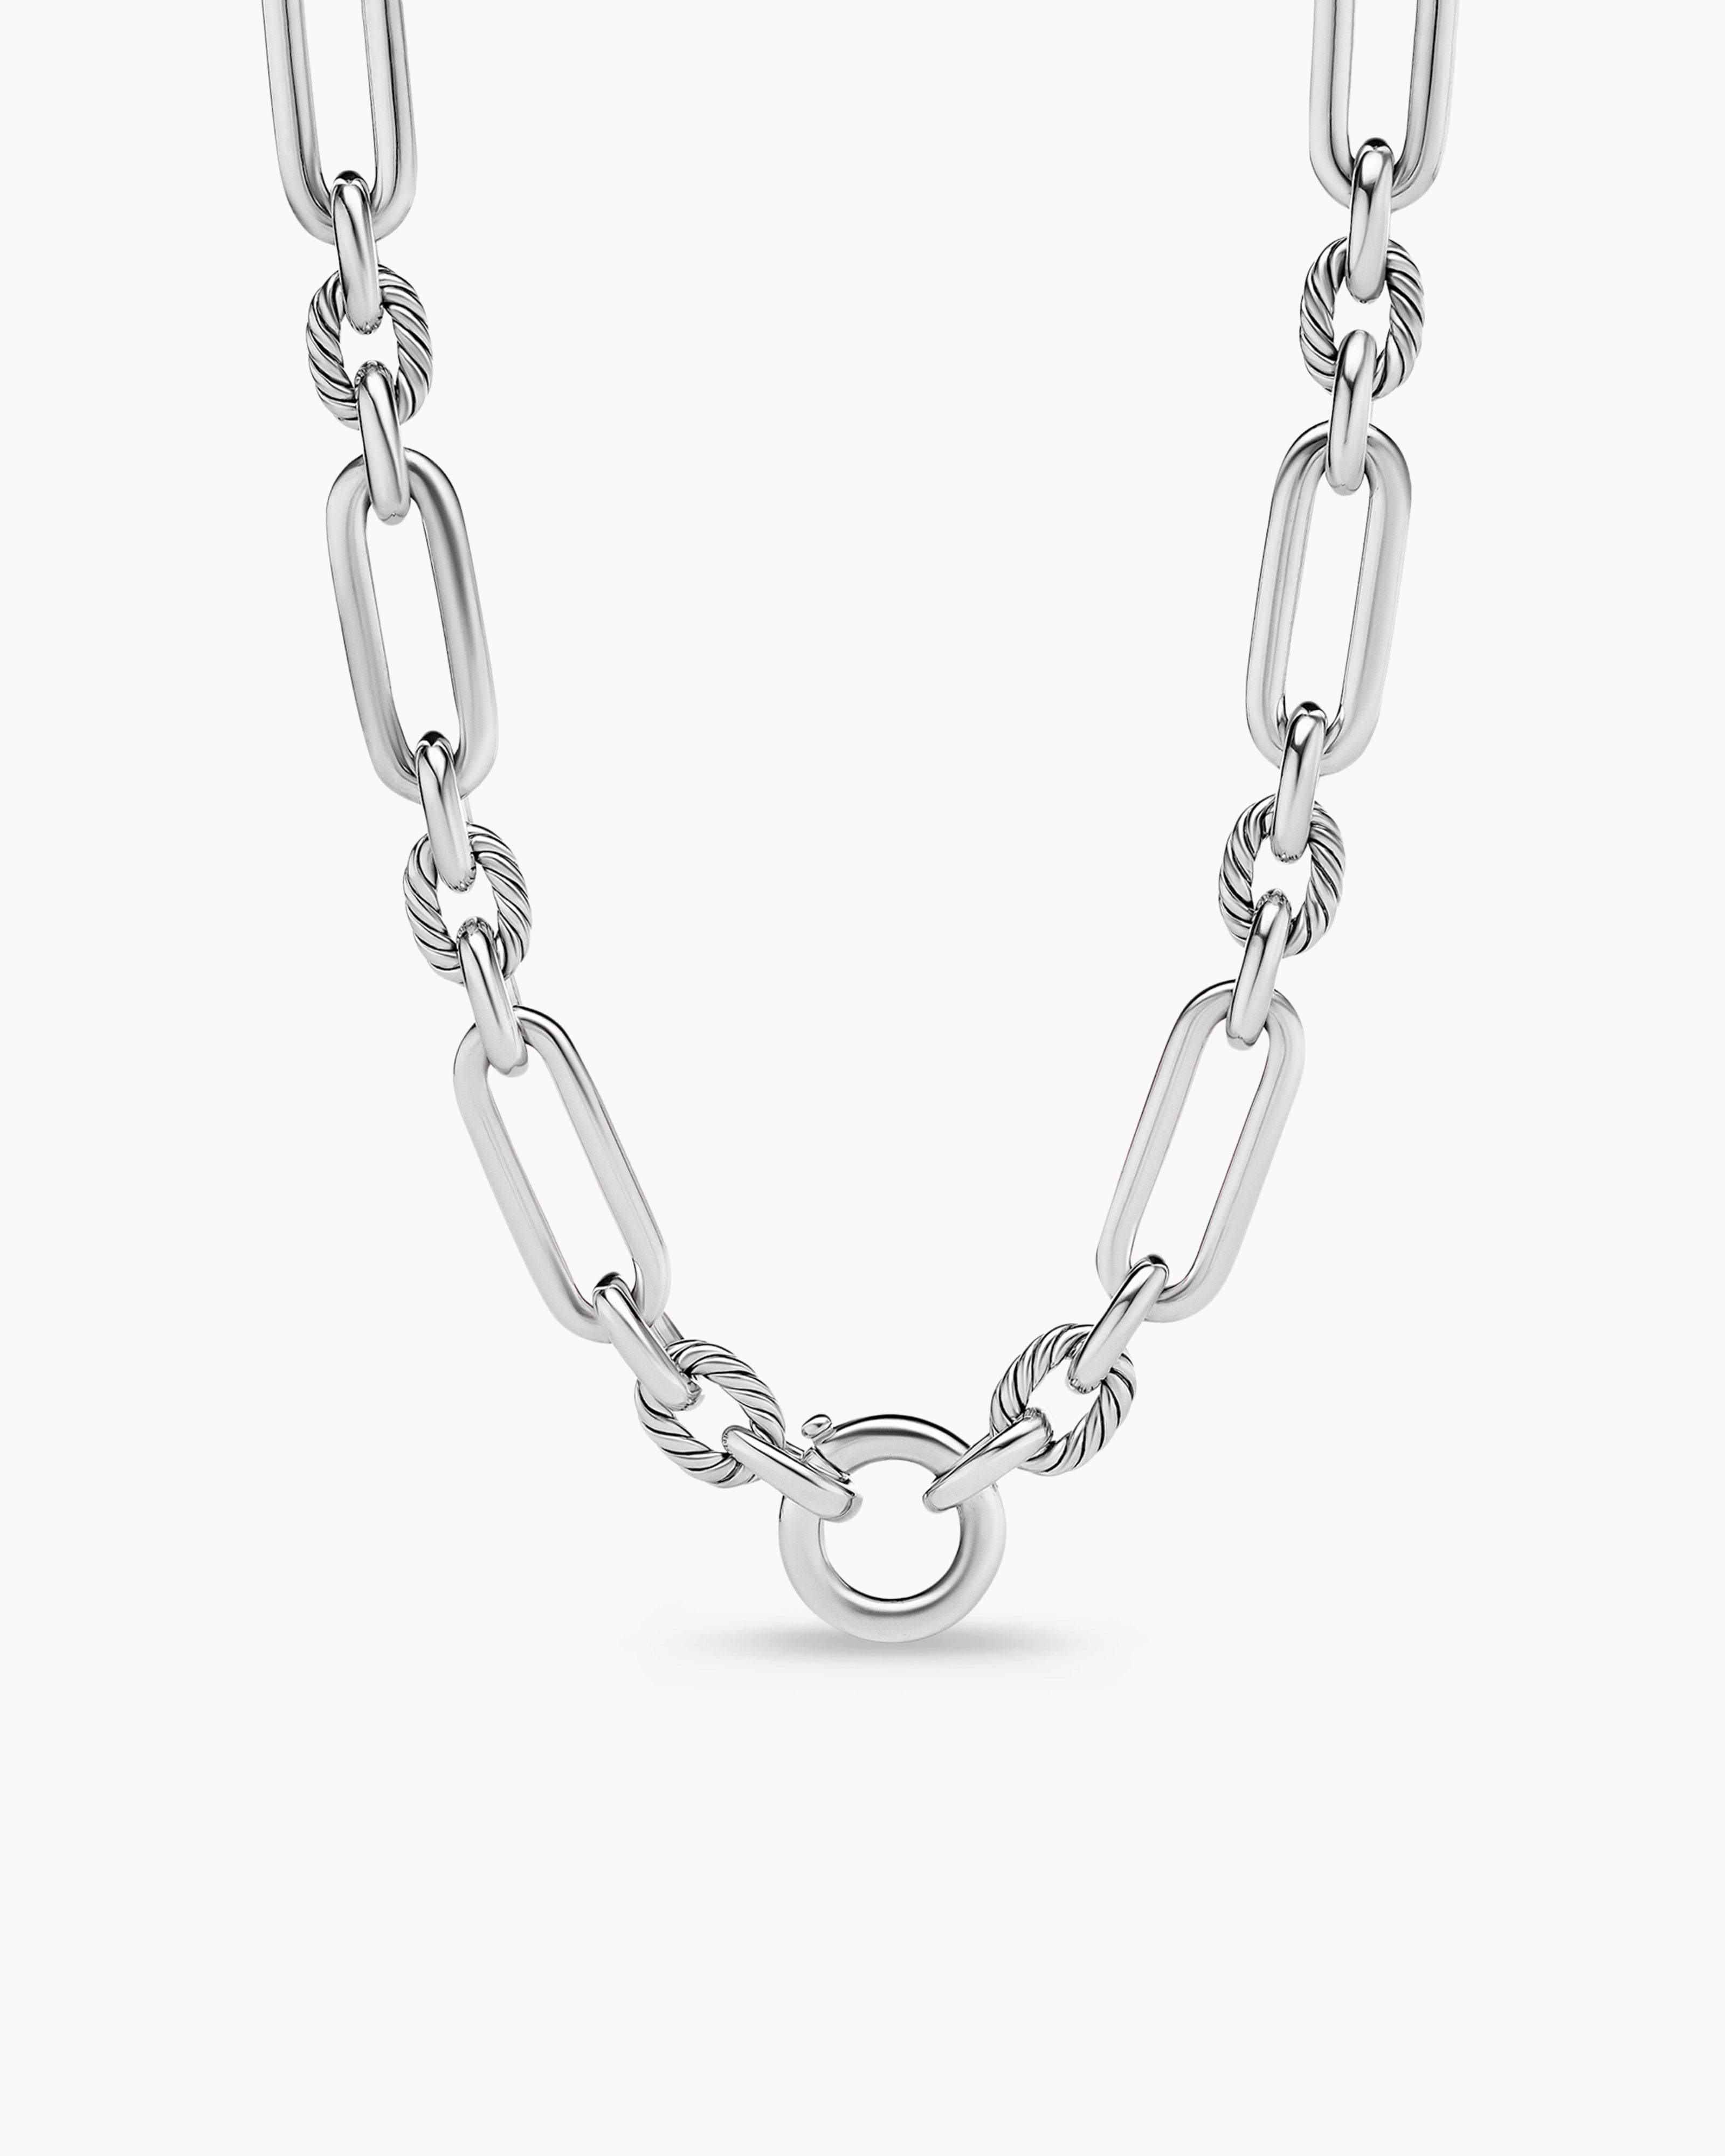 Kendra Scott Jessie Crystal Chain Necklace 001-705-42507 | Meigs Jewelry |  Tahlequah, OK